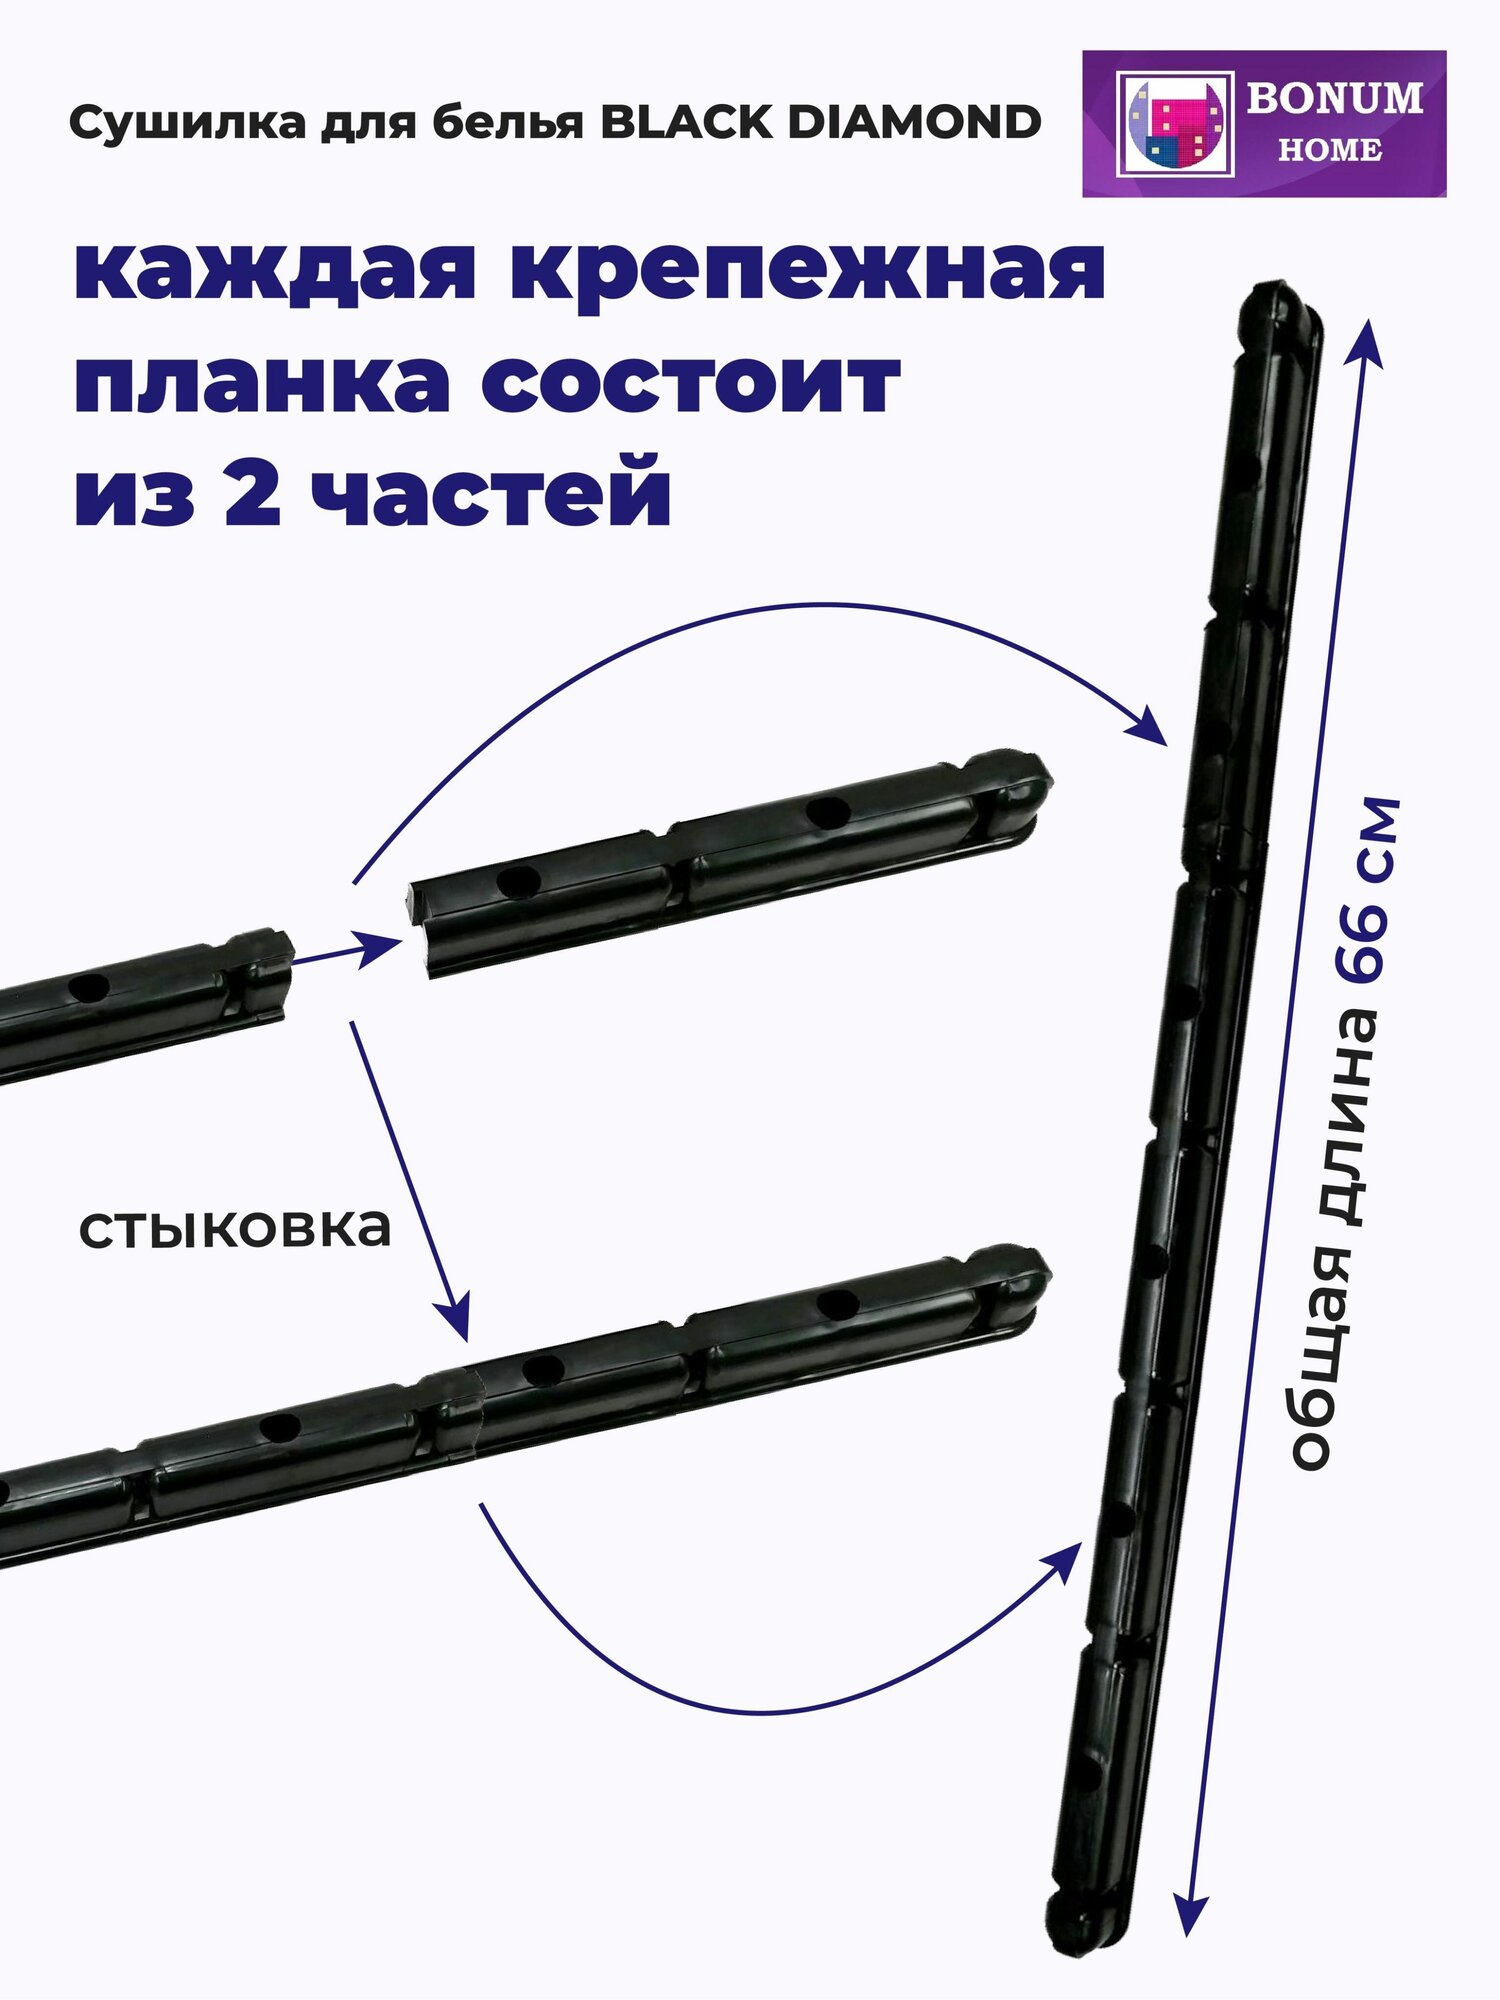 Сушилка для белья "BLACK DIAMOND" 160см.7прутьев,потолочная,навесная,алюминиевая,черная.Беларусь. - фотография № 8